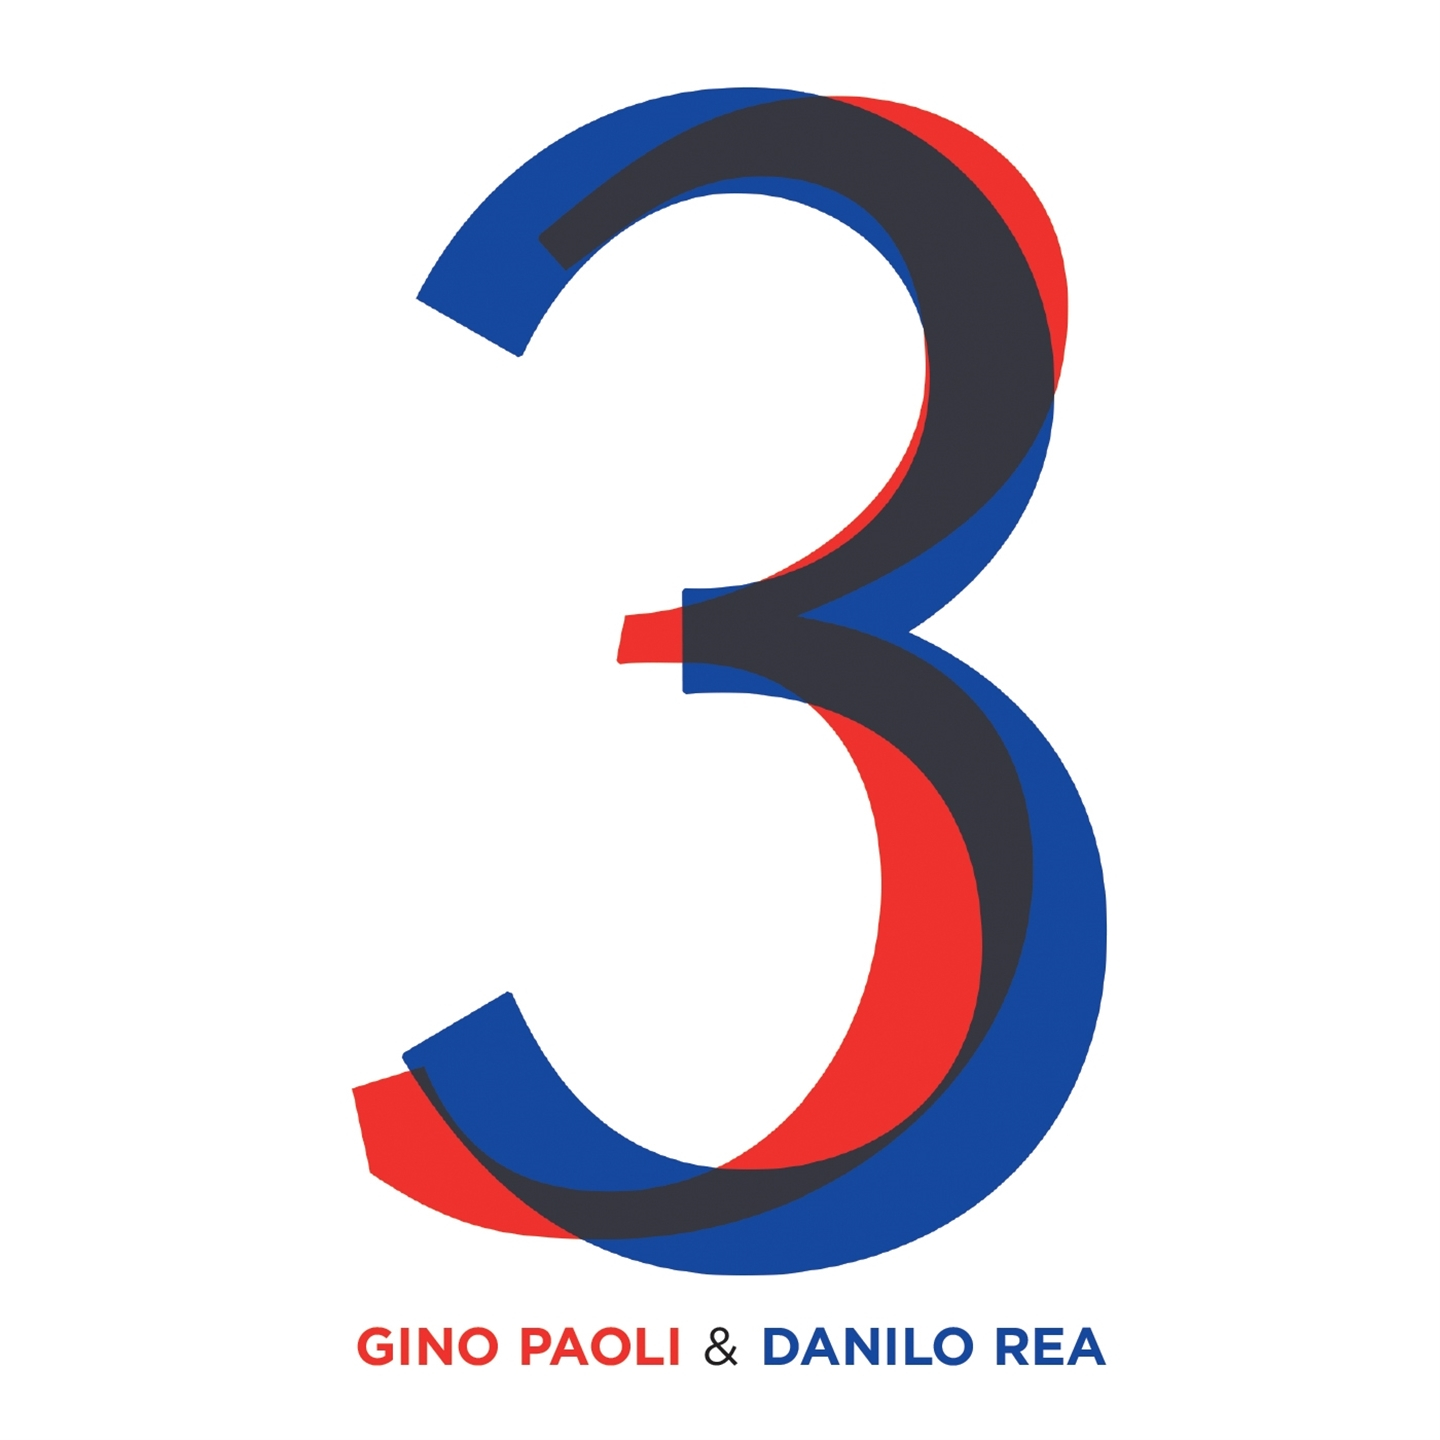 Gino Paoli, Danilo Rea - 3 - Zdjęcie 1 z 1